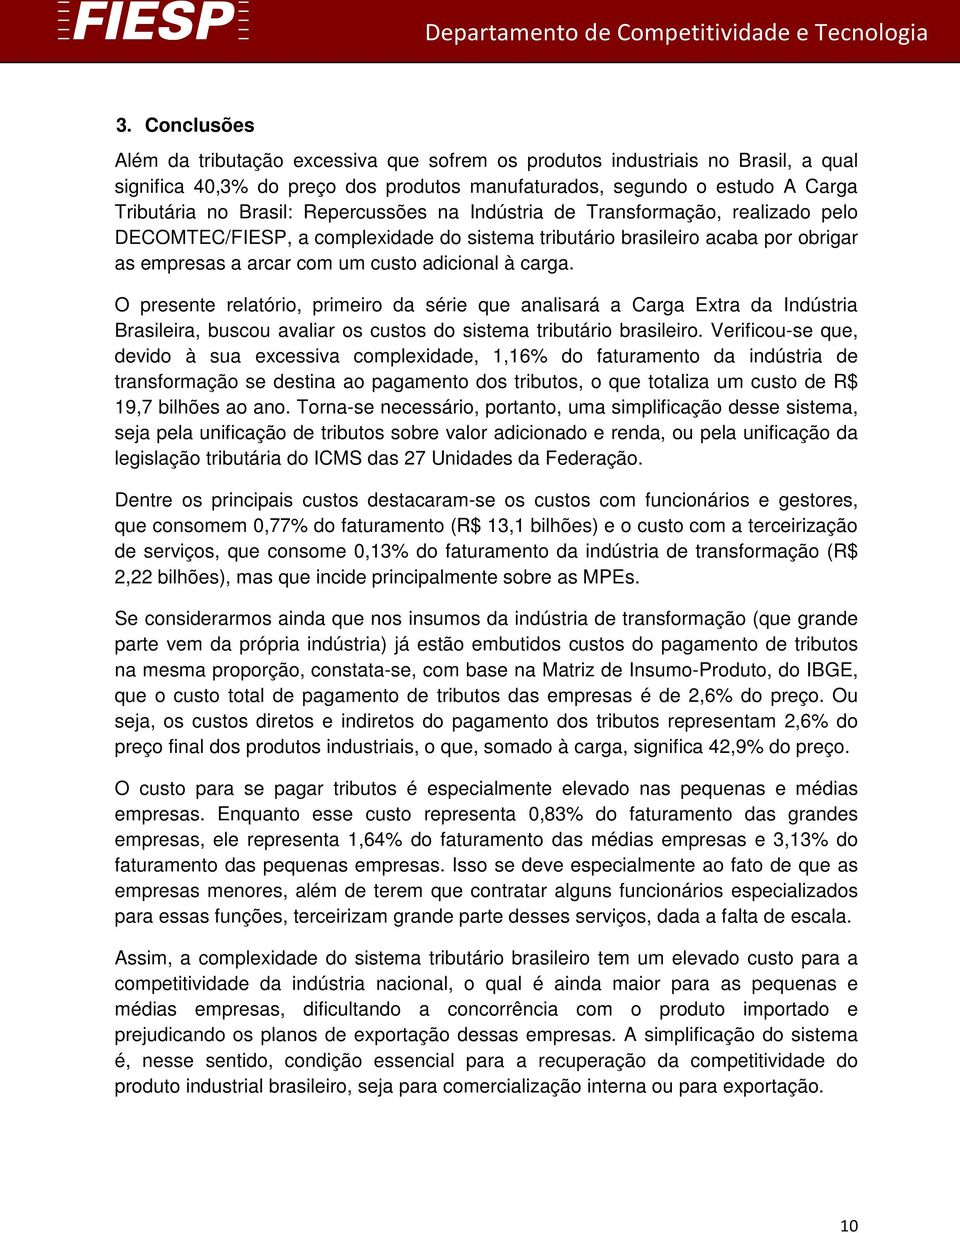 O presente relatório, primeiro da série que analisará a Carga Extra da Indústria Brasileira, buscou avaliar os custos do sistema tributário brasileiro.